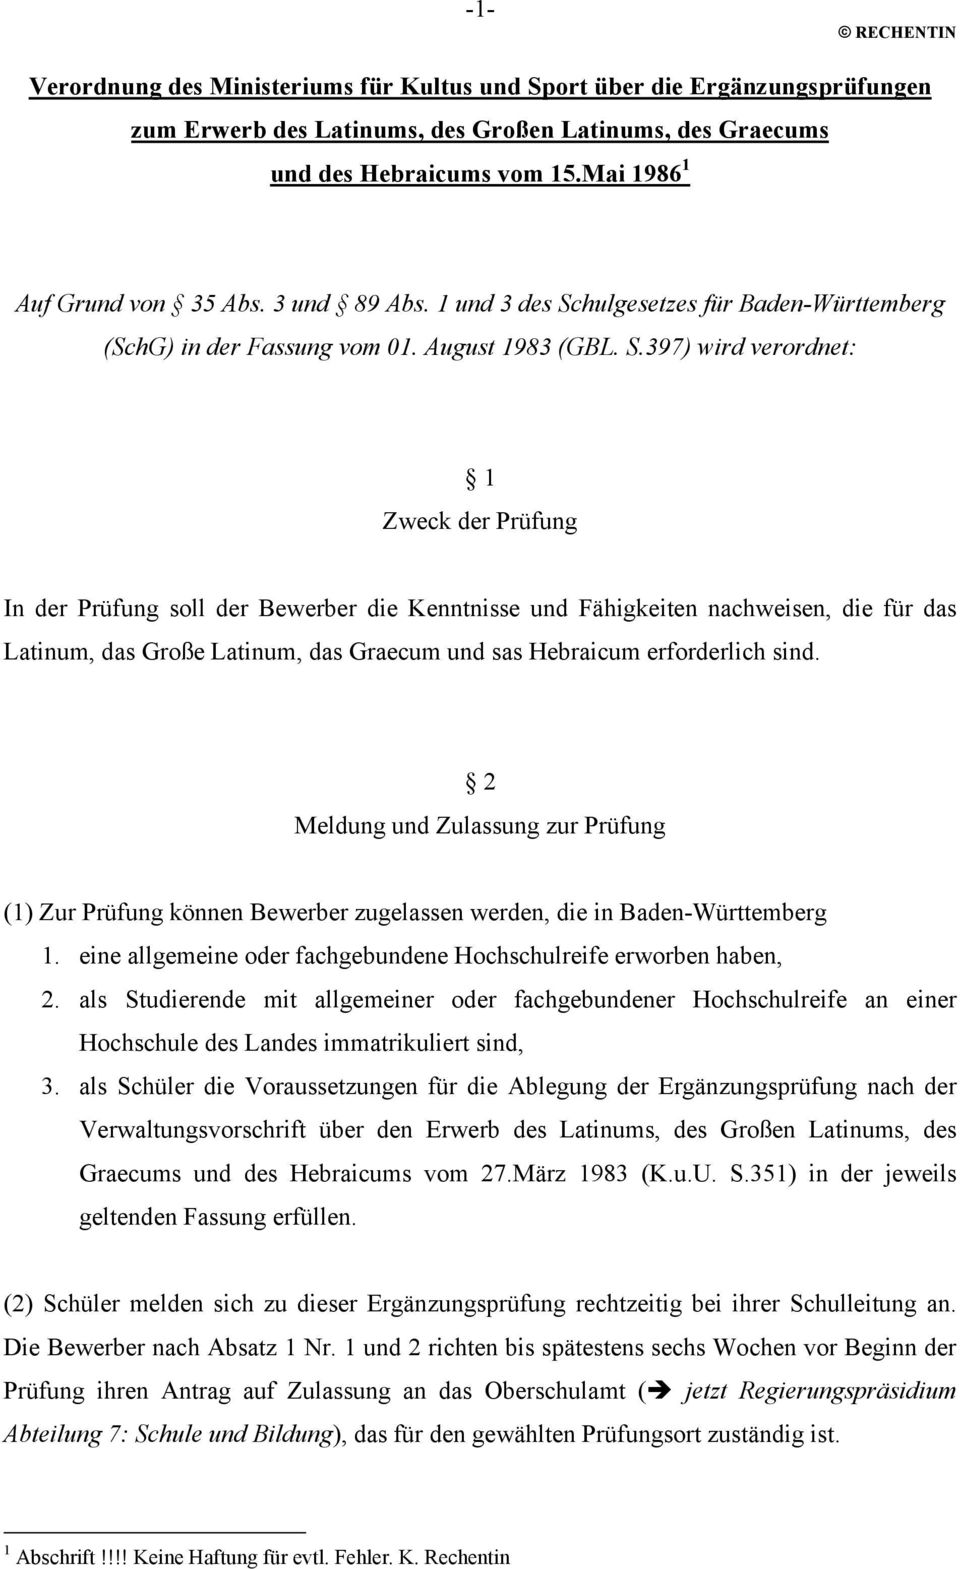 hulgesetzes für Baden-Württemberg (SchG) in der Fassung vom 01. August 1983 (GBL. S.